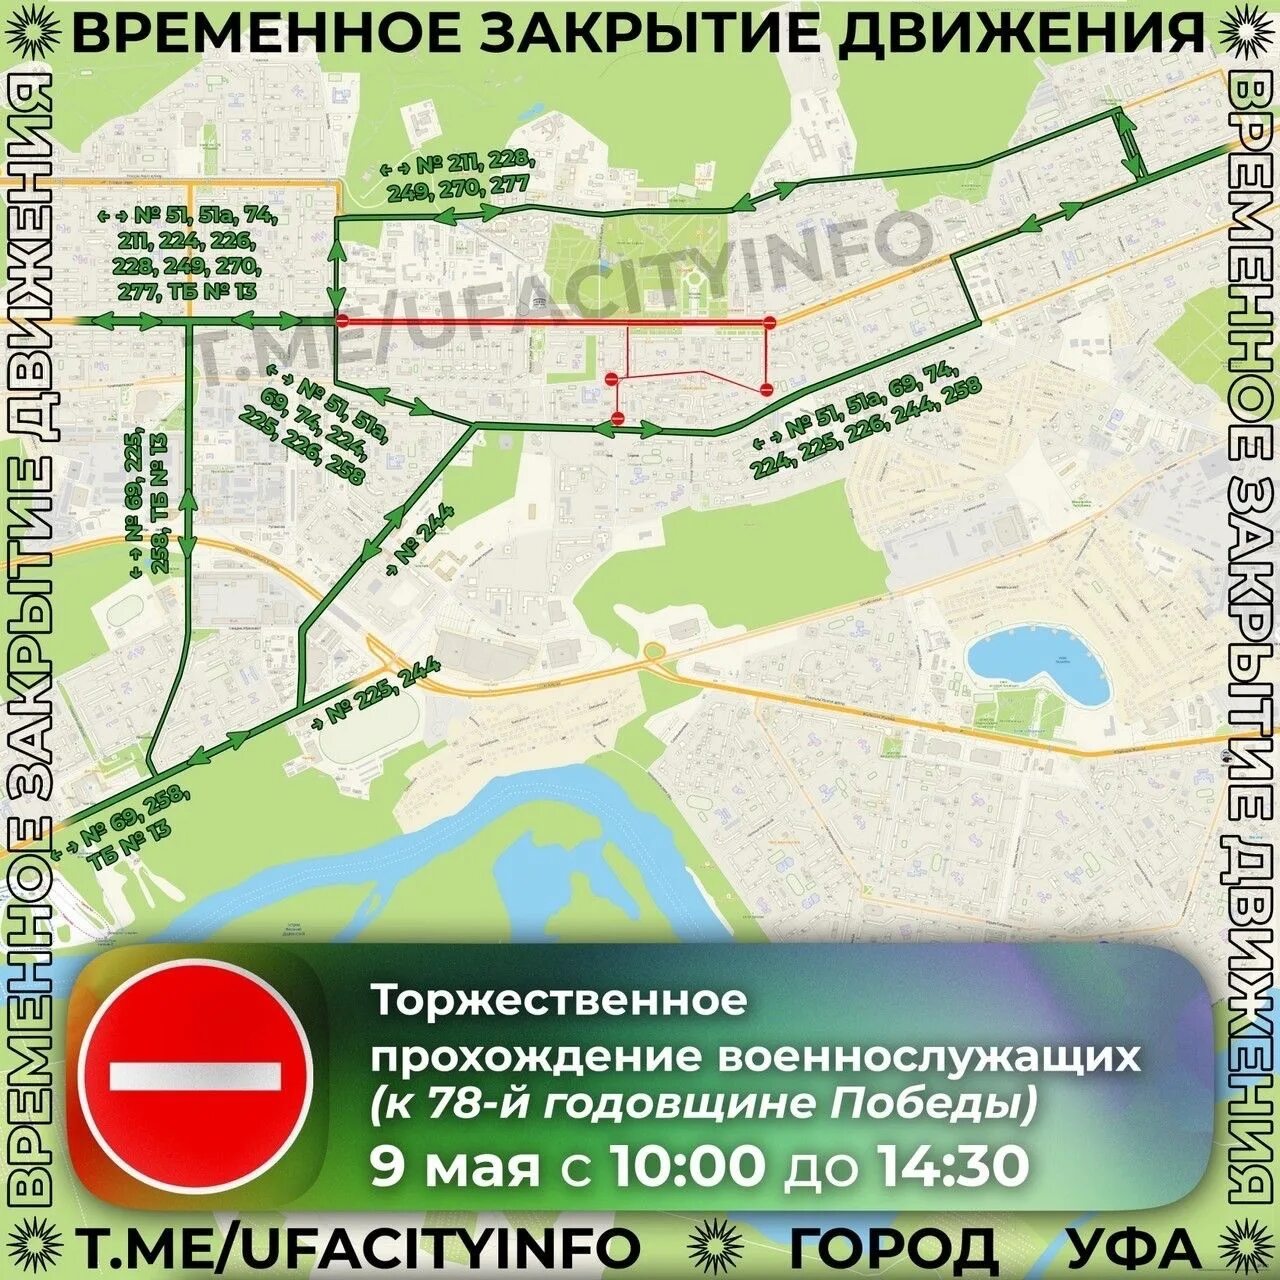 Перекрытие движения. Карта движения парада. Схема перекрытия улиц 9 мая. Схема перекрытия дорог на 9 мая. Перекроют 70 лет октября